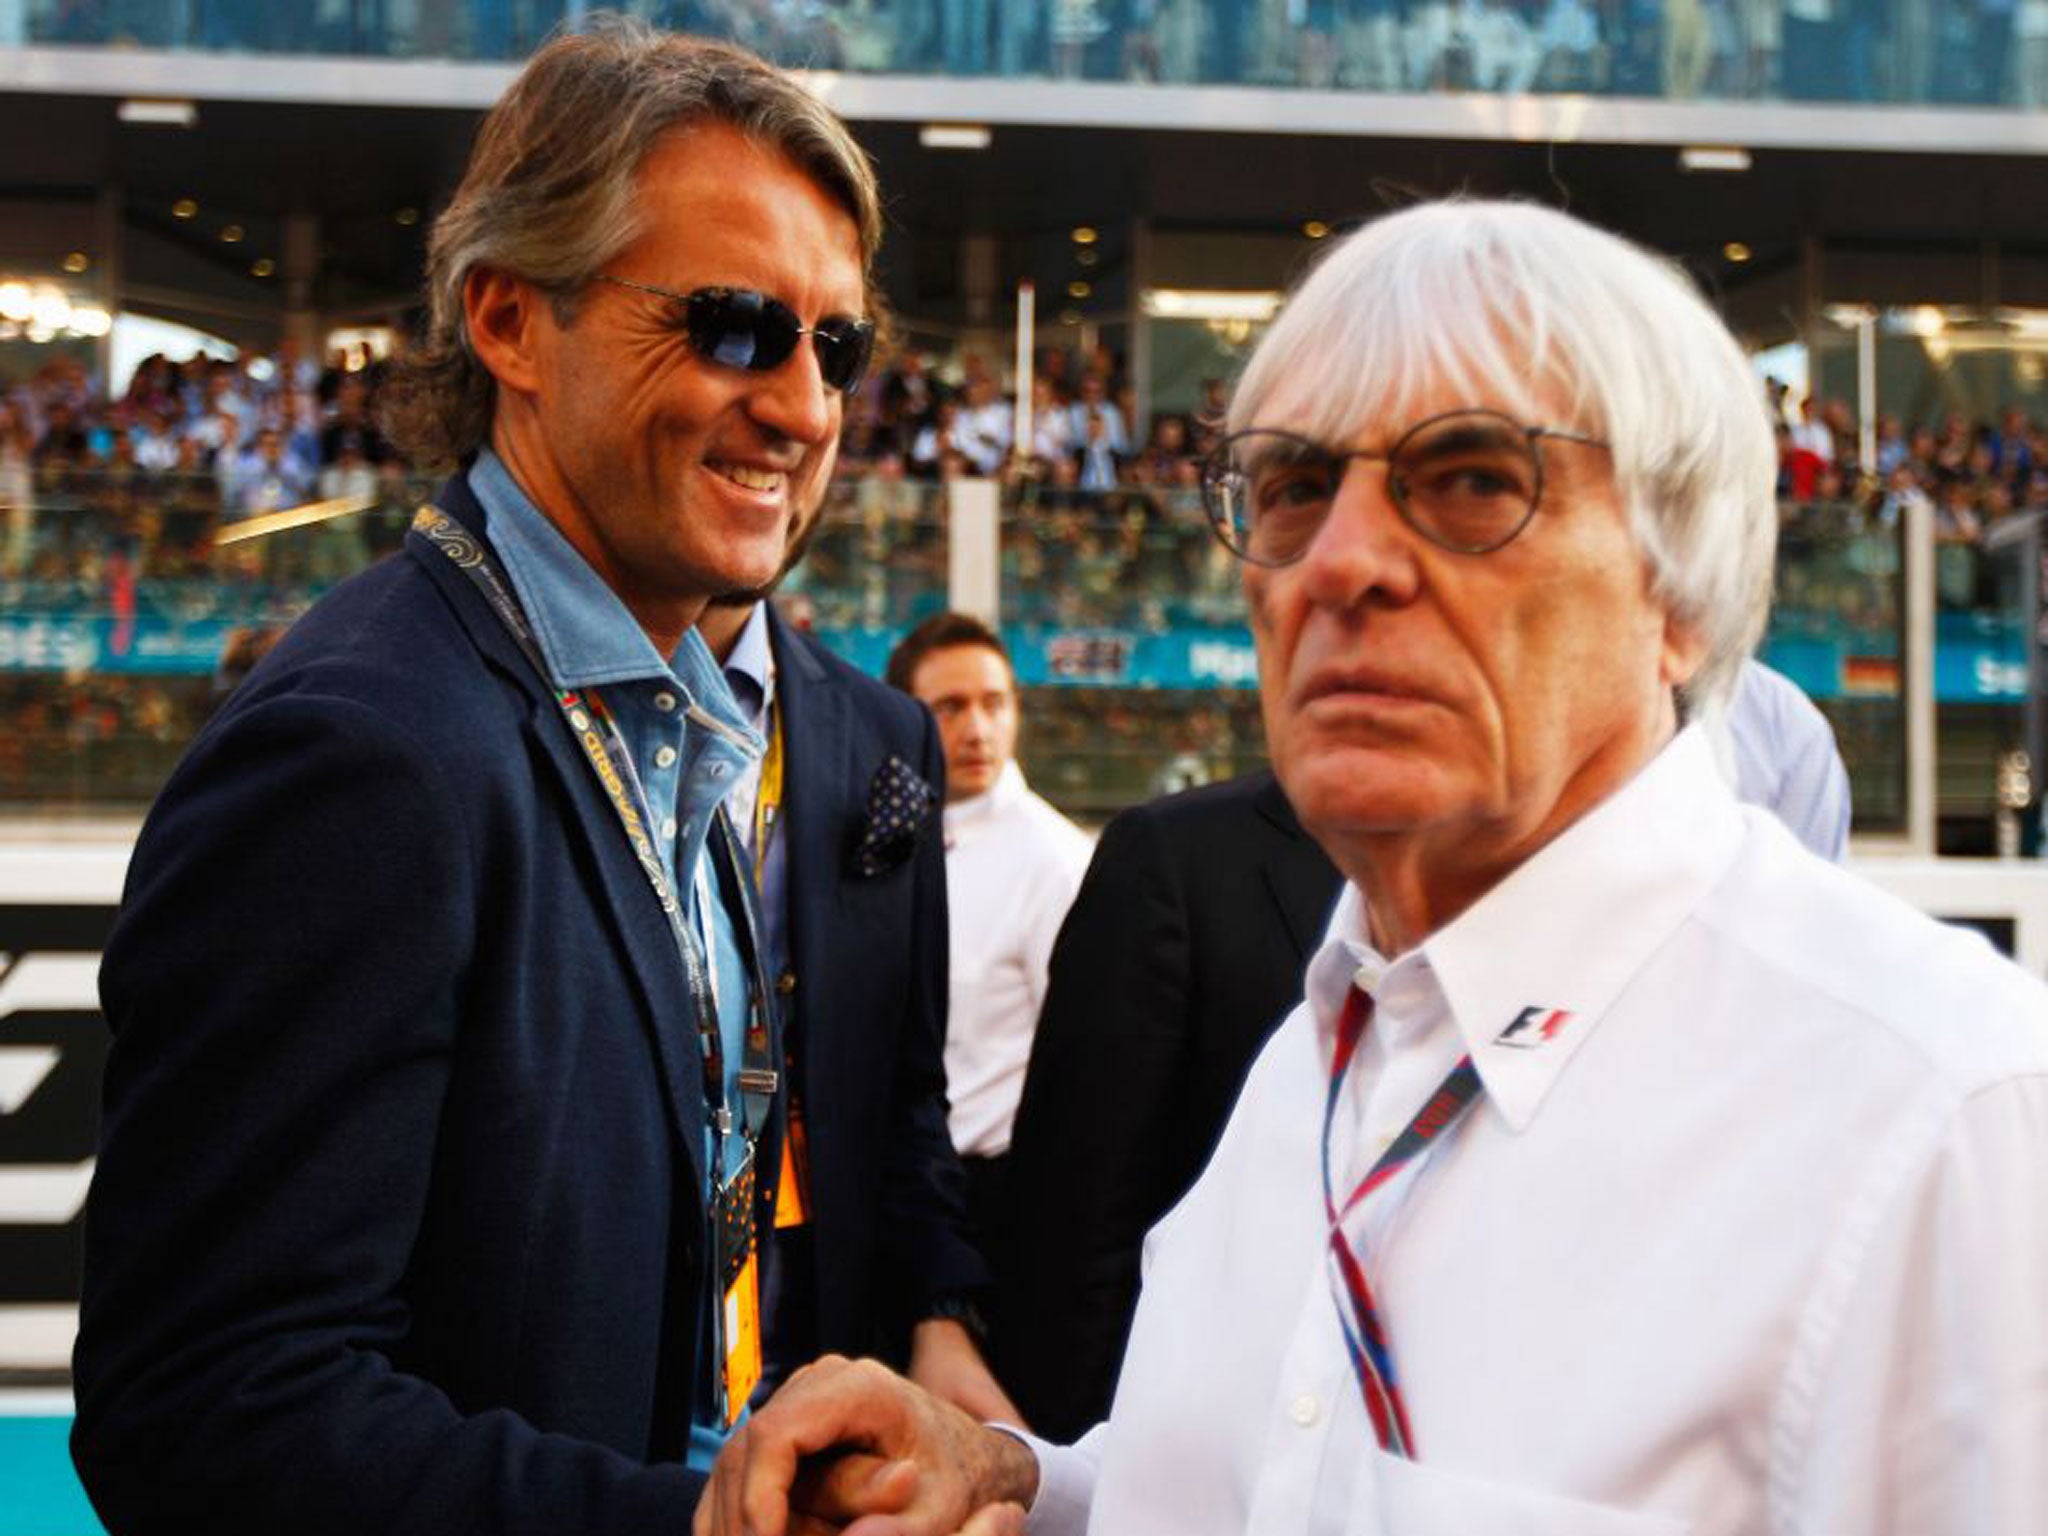 A dapper Roberto Mancini (left) greets Bernie Ecclestone in Dubai